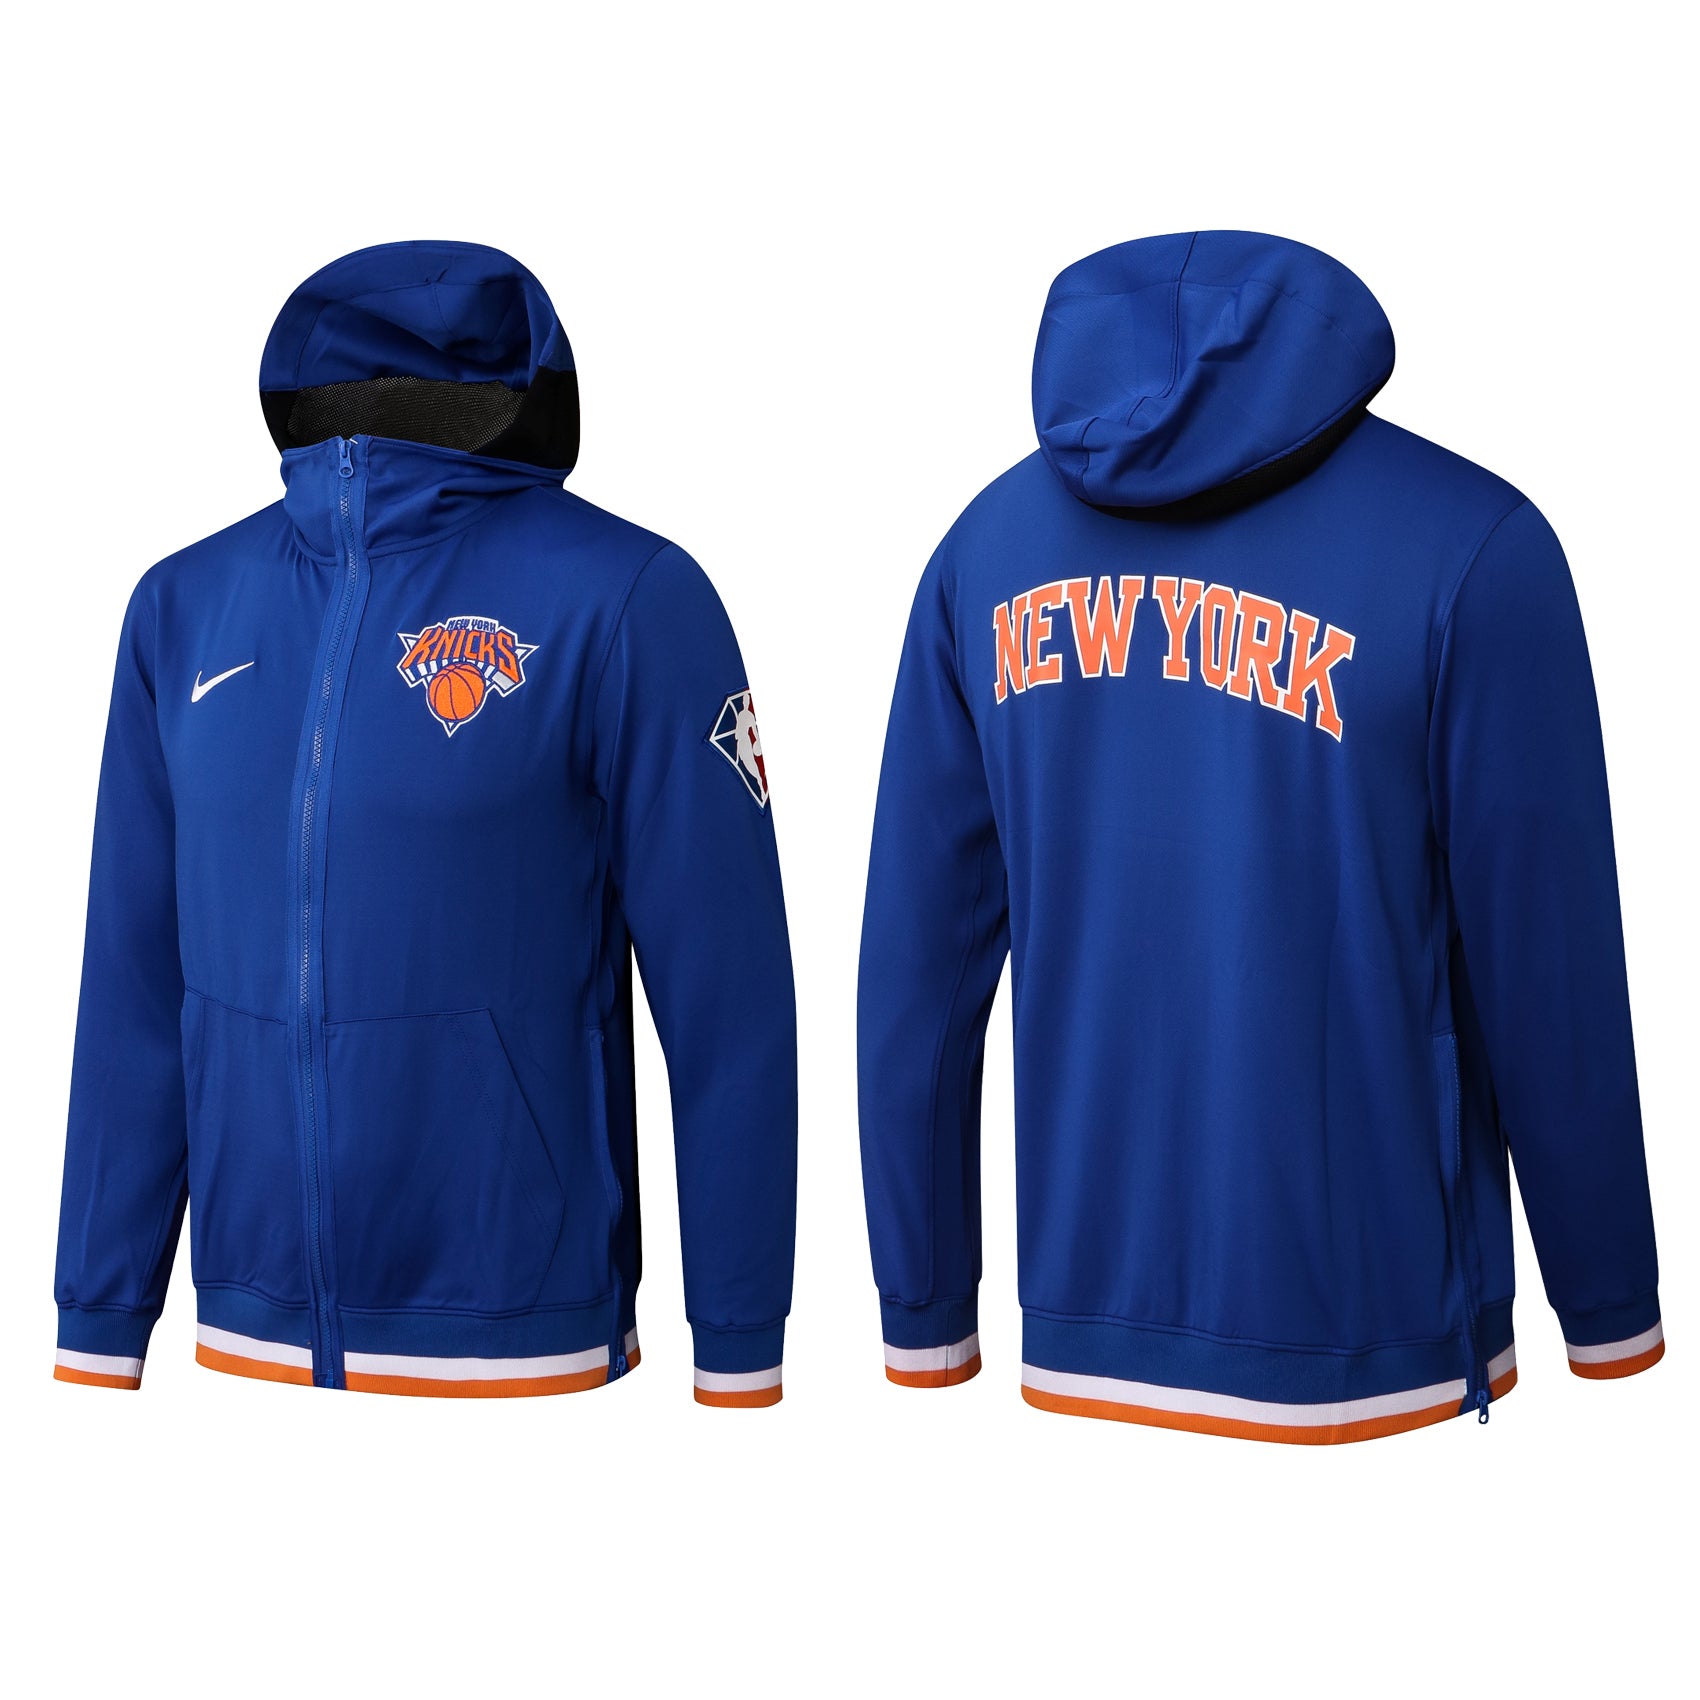 New york blue/orange jacket